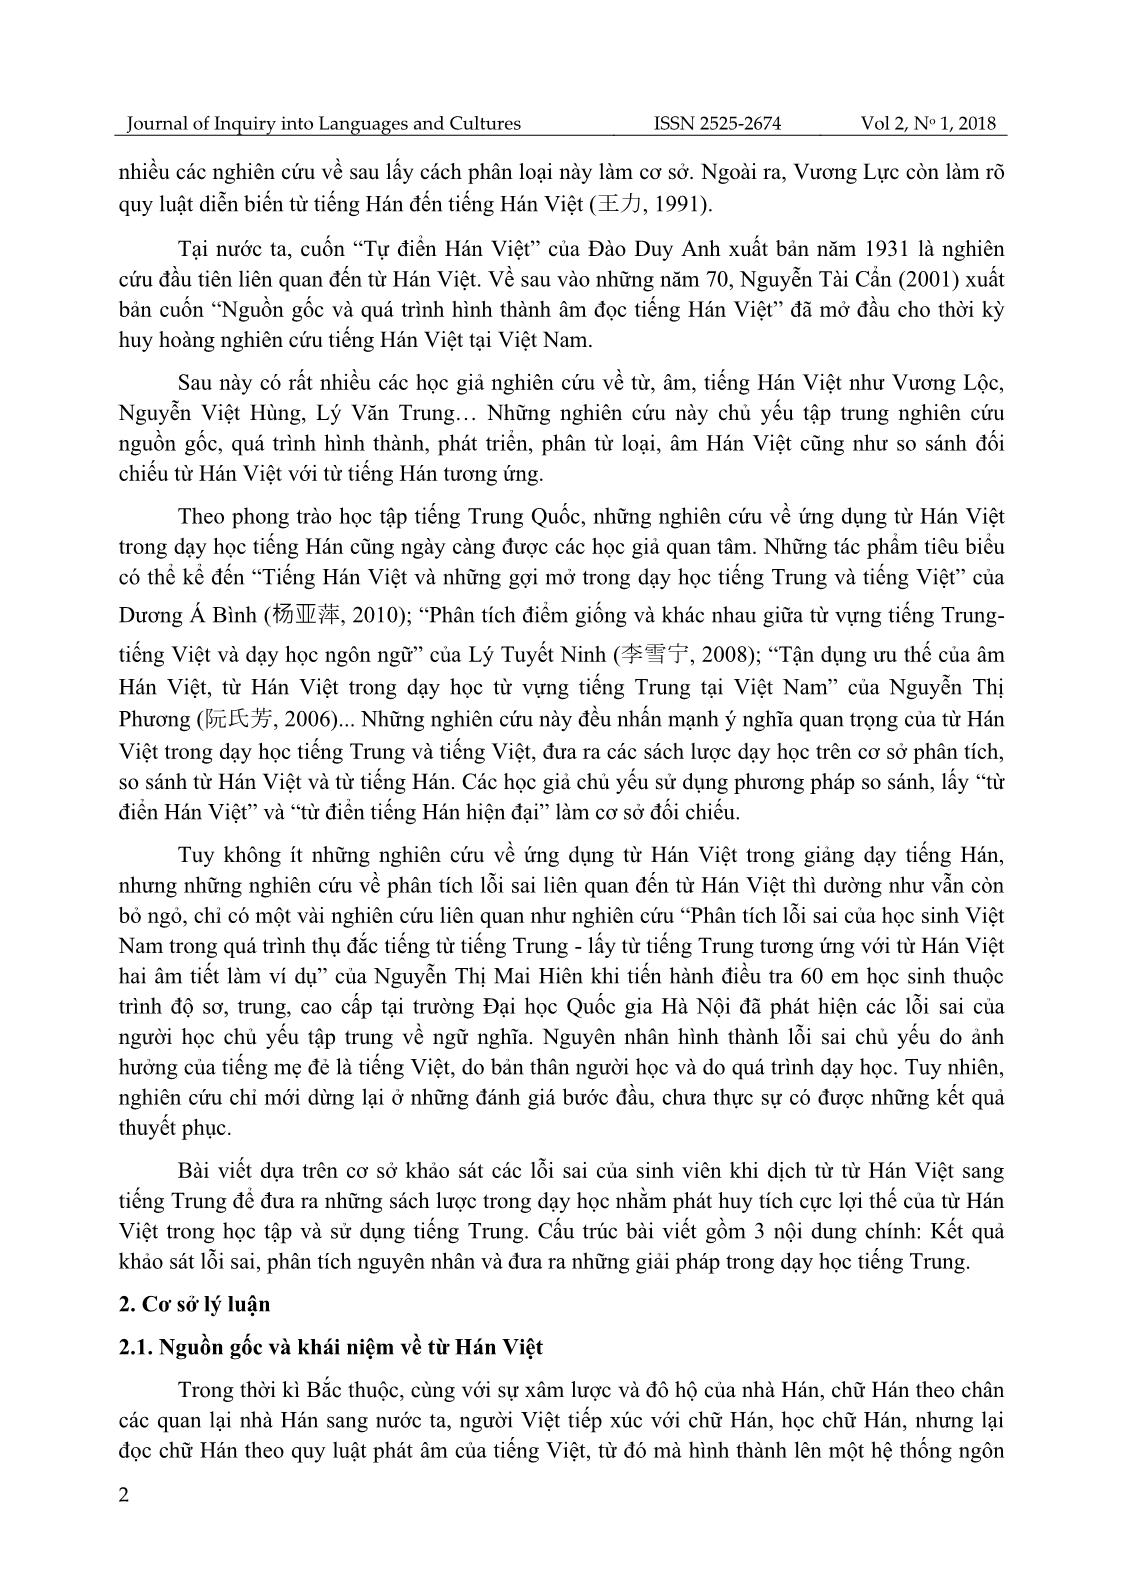 Khảo sát lỗi sai của sinh viên khoa Ngoại ngữ, Đại học Thái Nguyên khi dịch trực tiếp từ Hán Việt sang tiếng Trung và giải pháp khắc phục trang 2